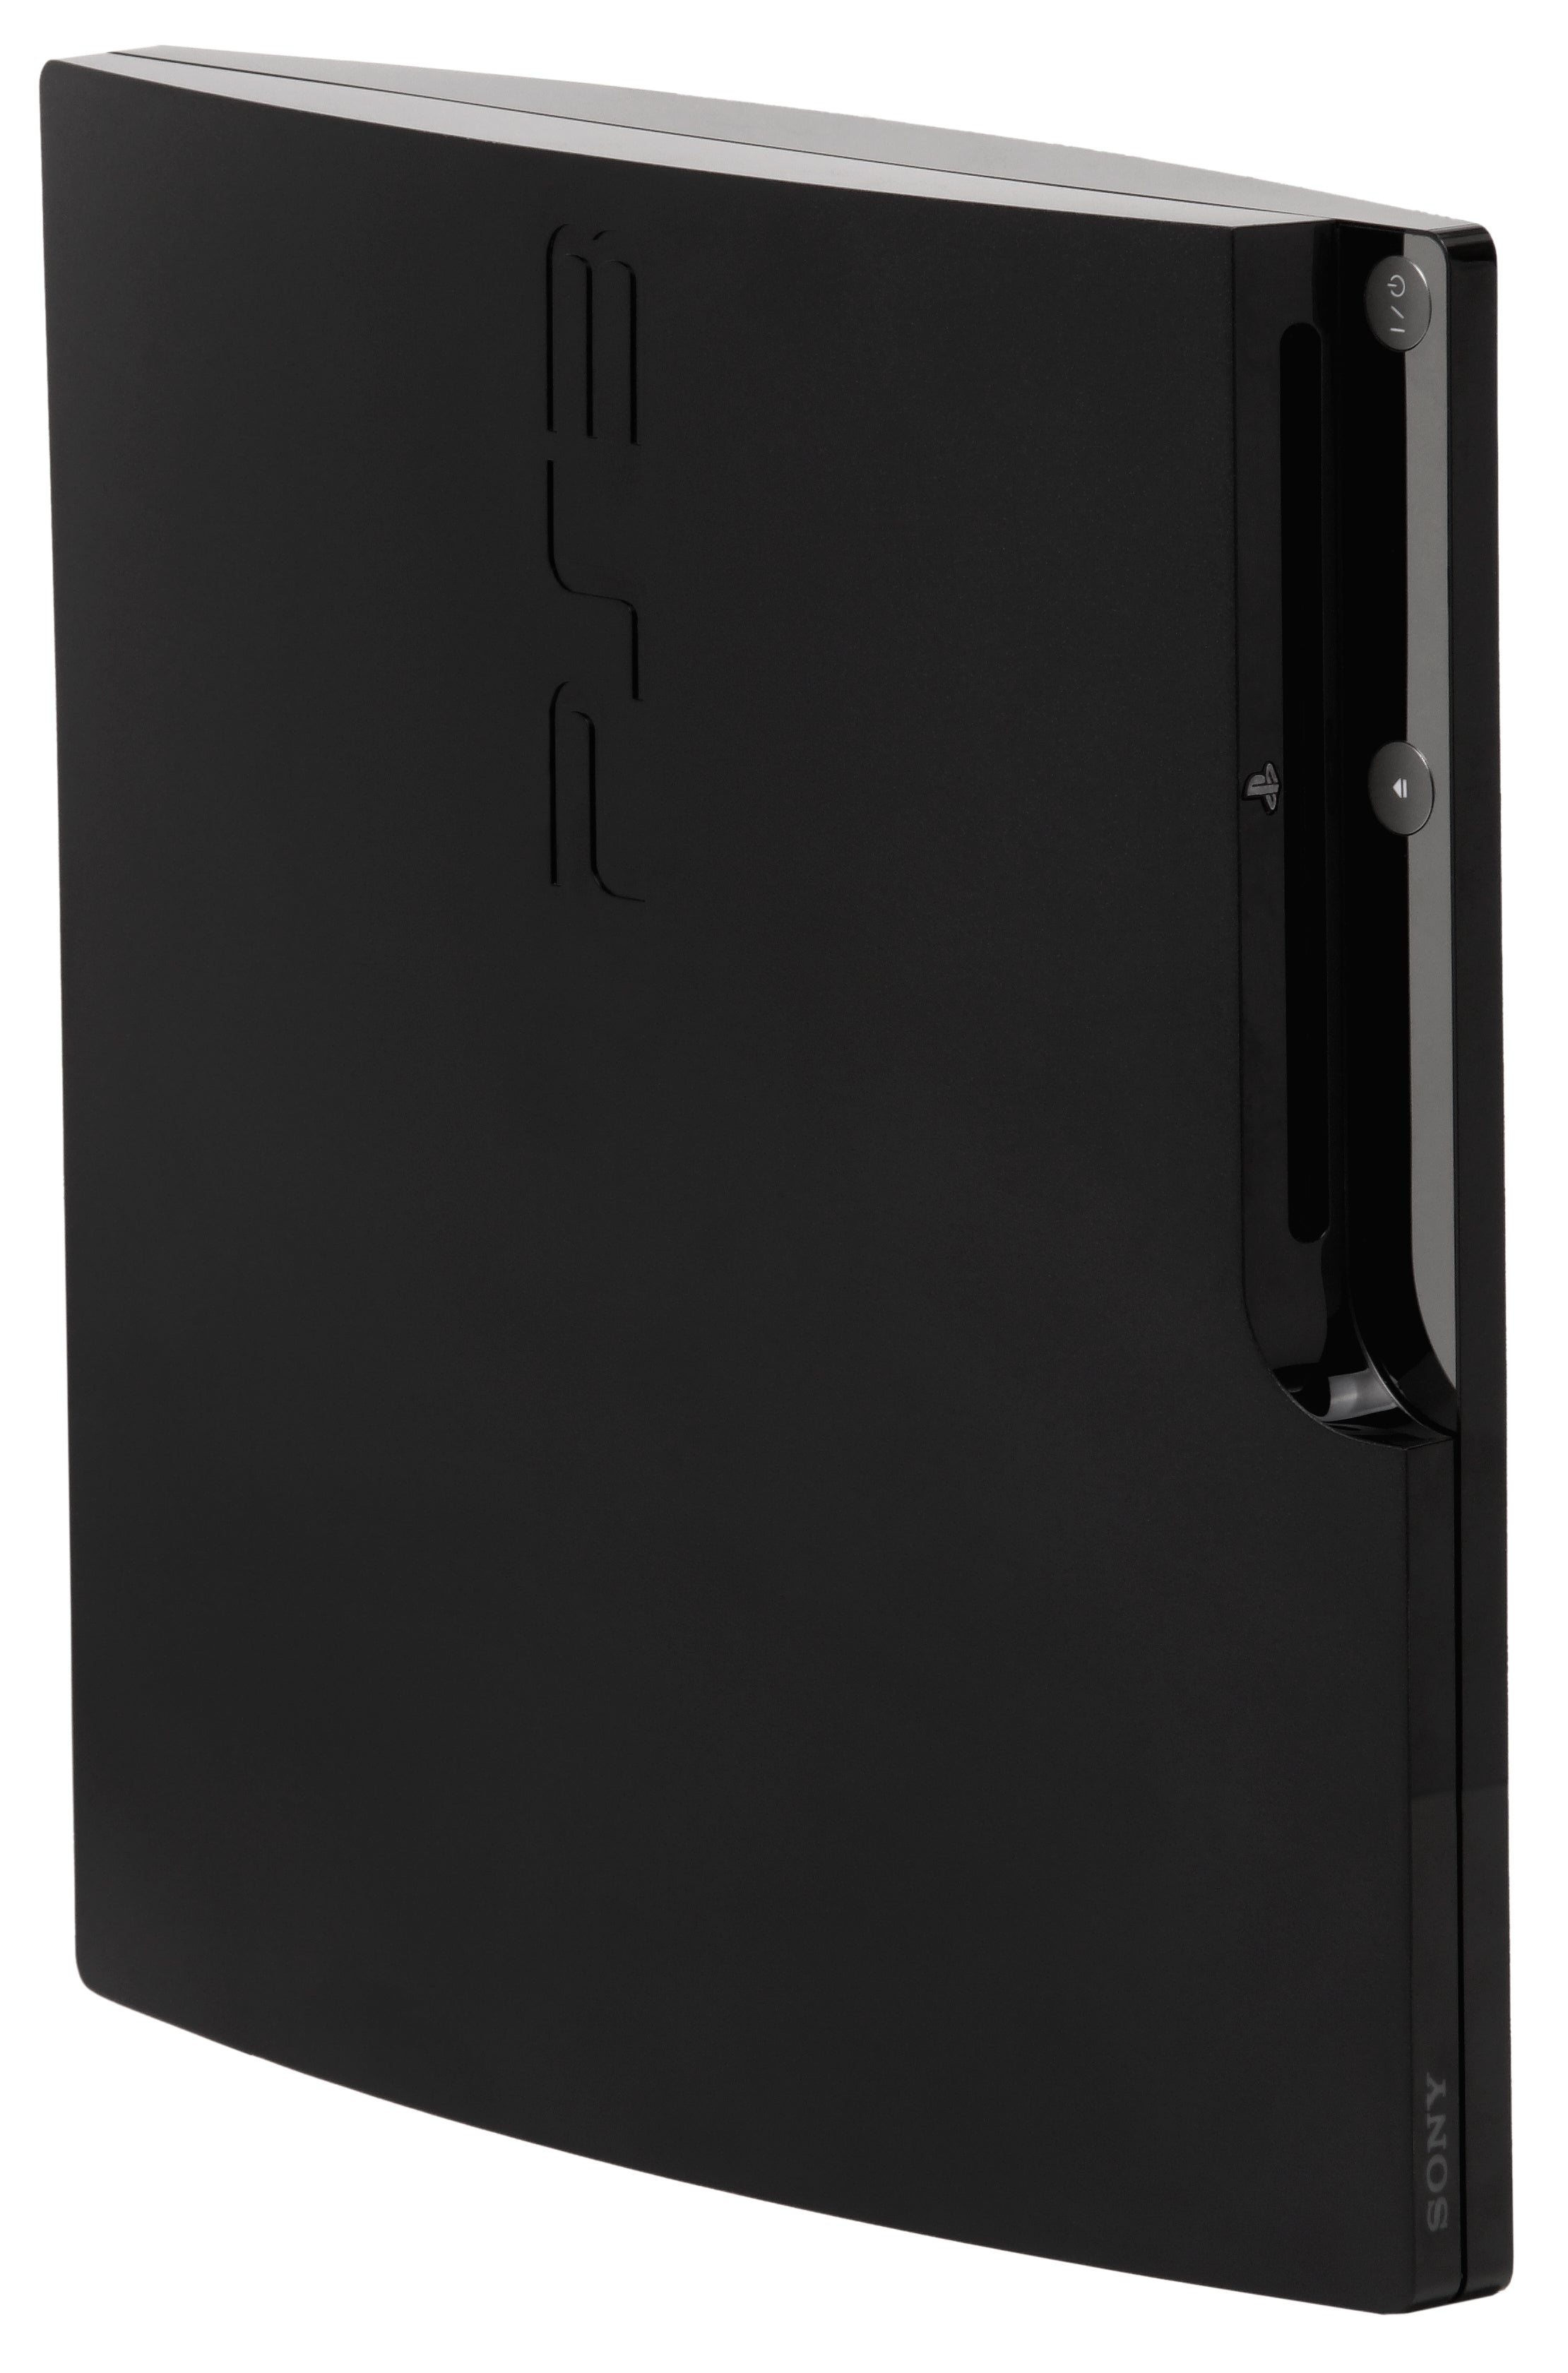 Playstation 3 Slim 250GB Console - Black 2001B 2101B